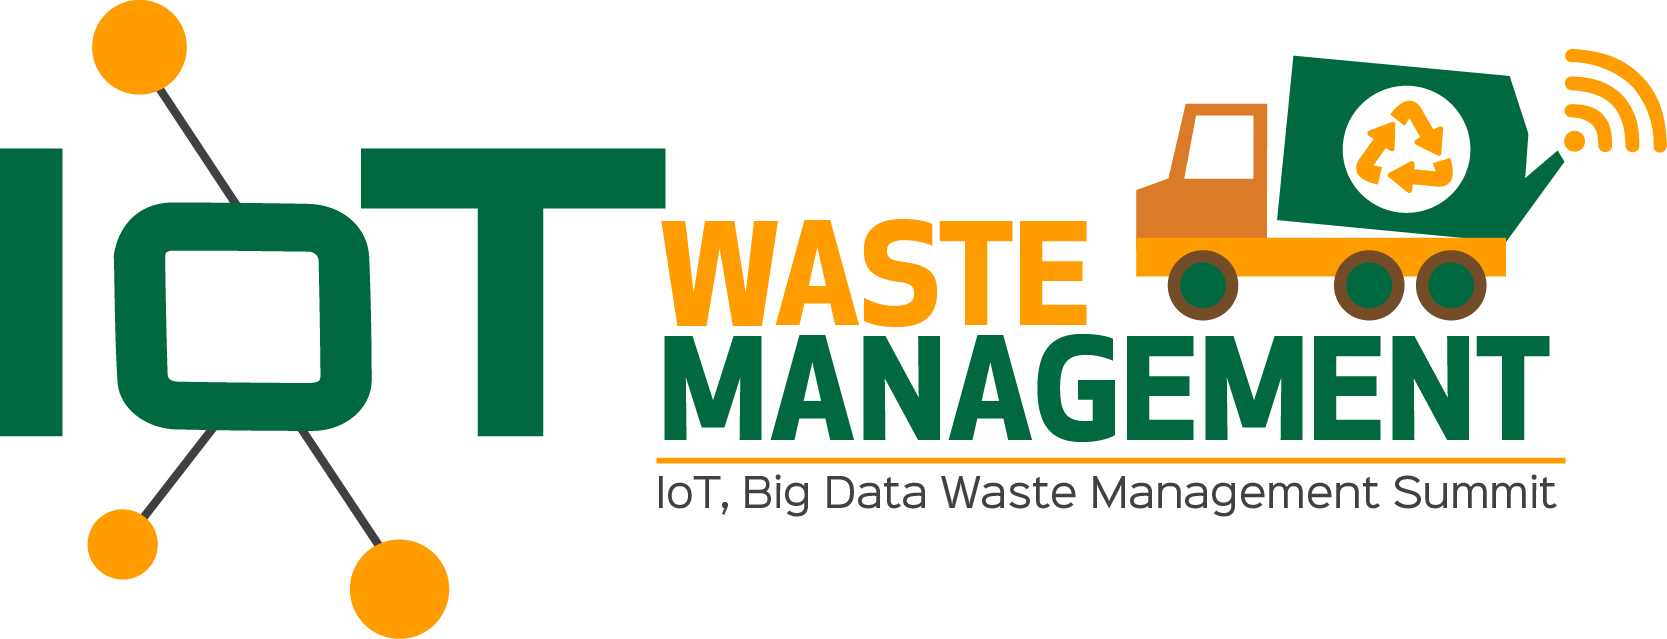 Iot, Big Data Waste Management Summit - Big Data For Waste Management (1667x639)